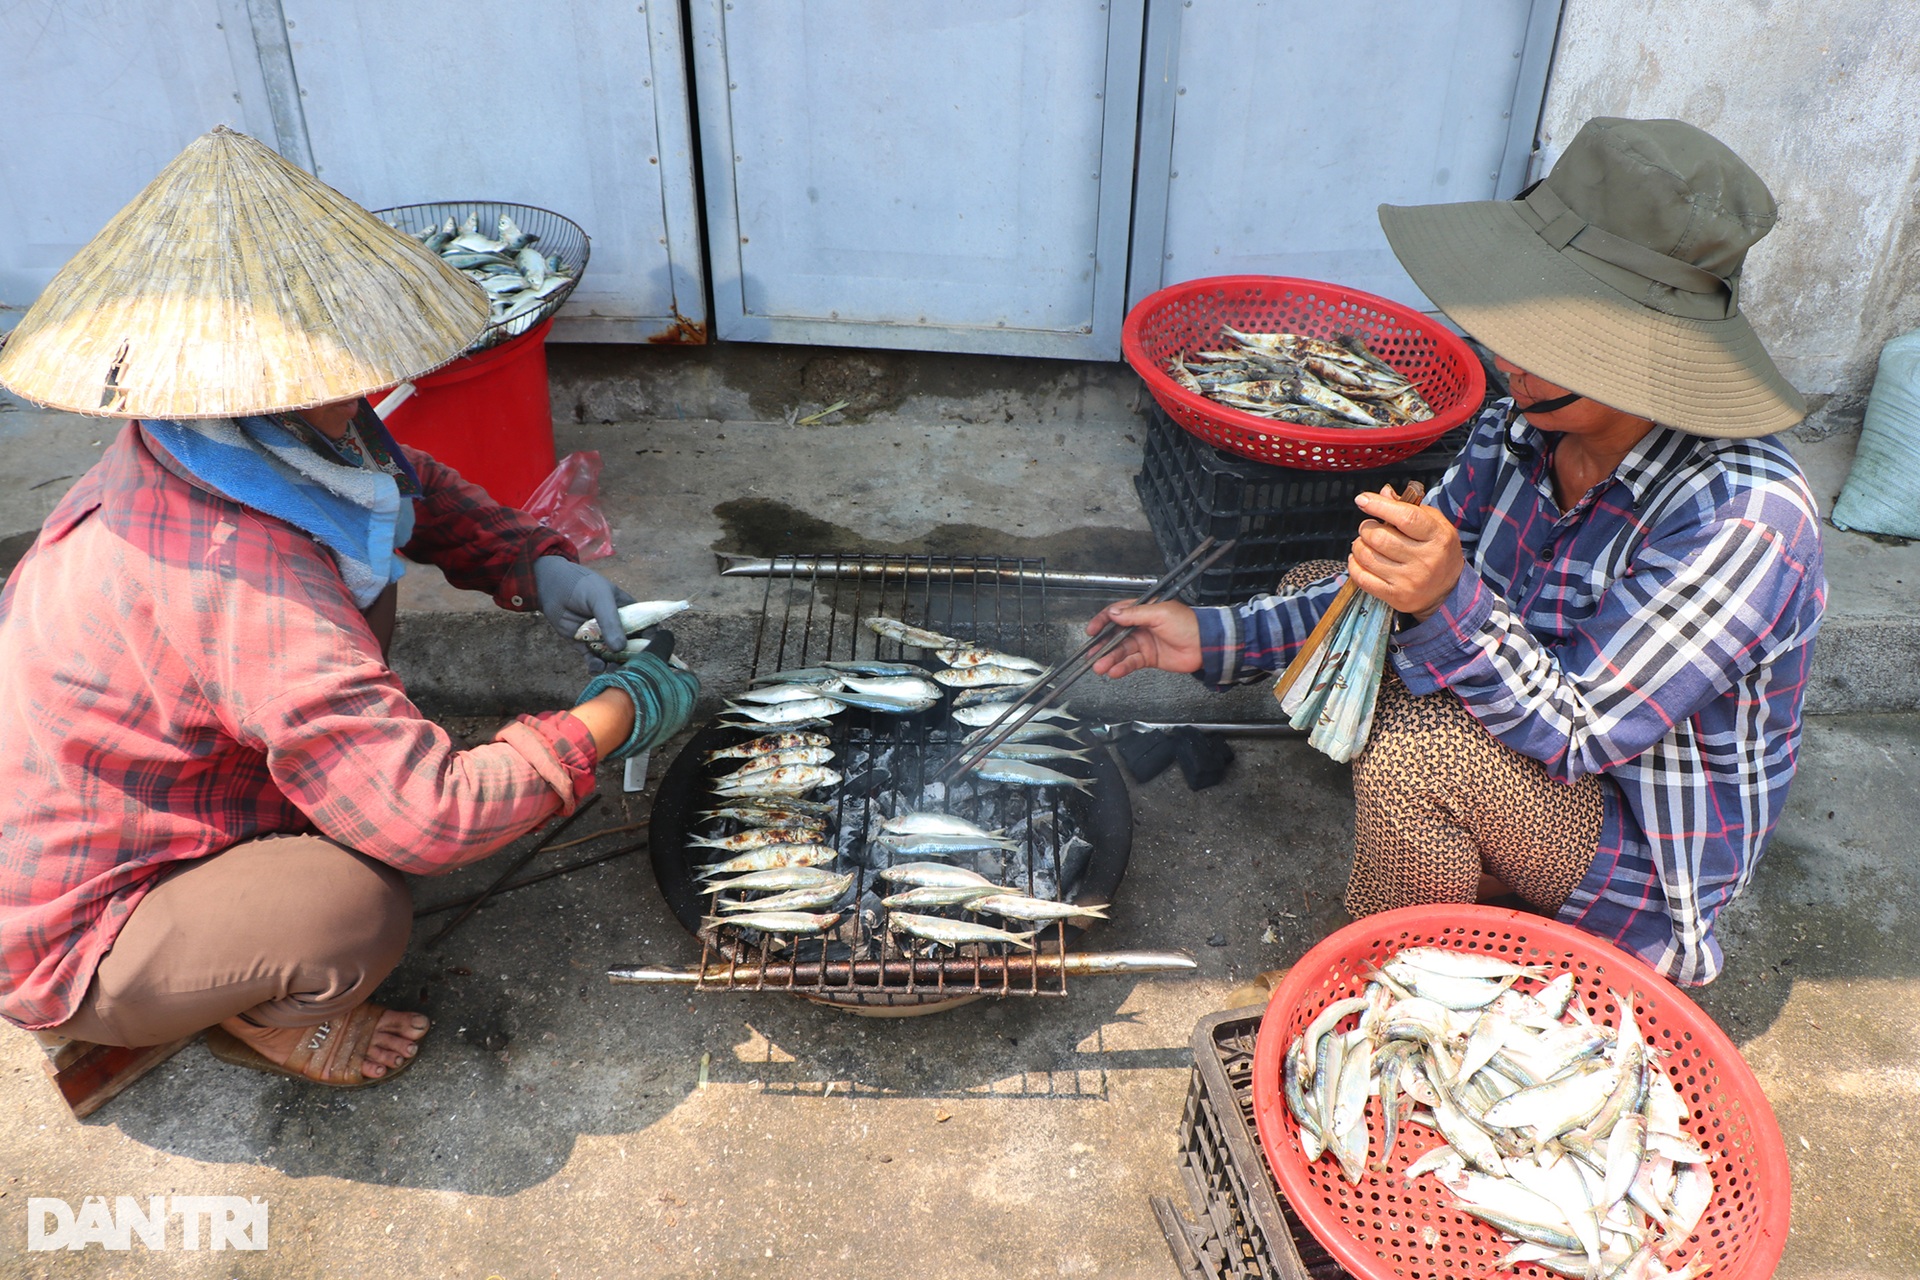 Phụ nữ làng biển mướt mồ hồi nướng cá bên bếp lửa giữa trưa 39 độ C - 3